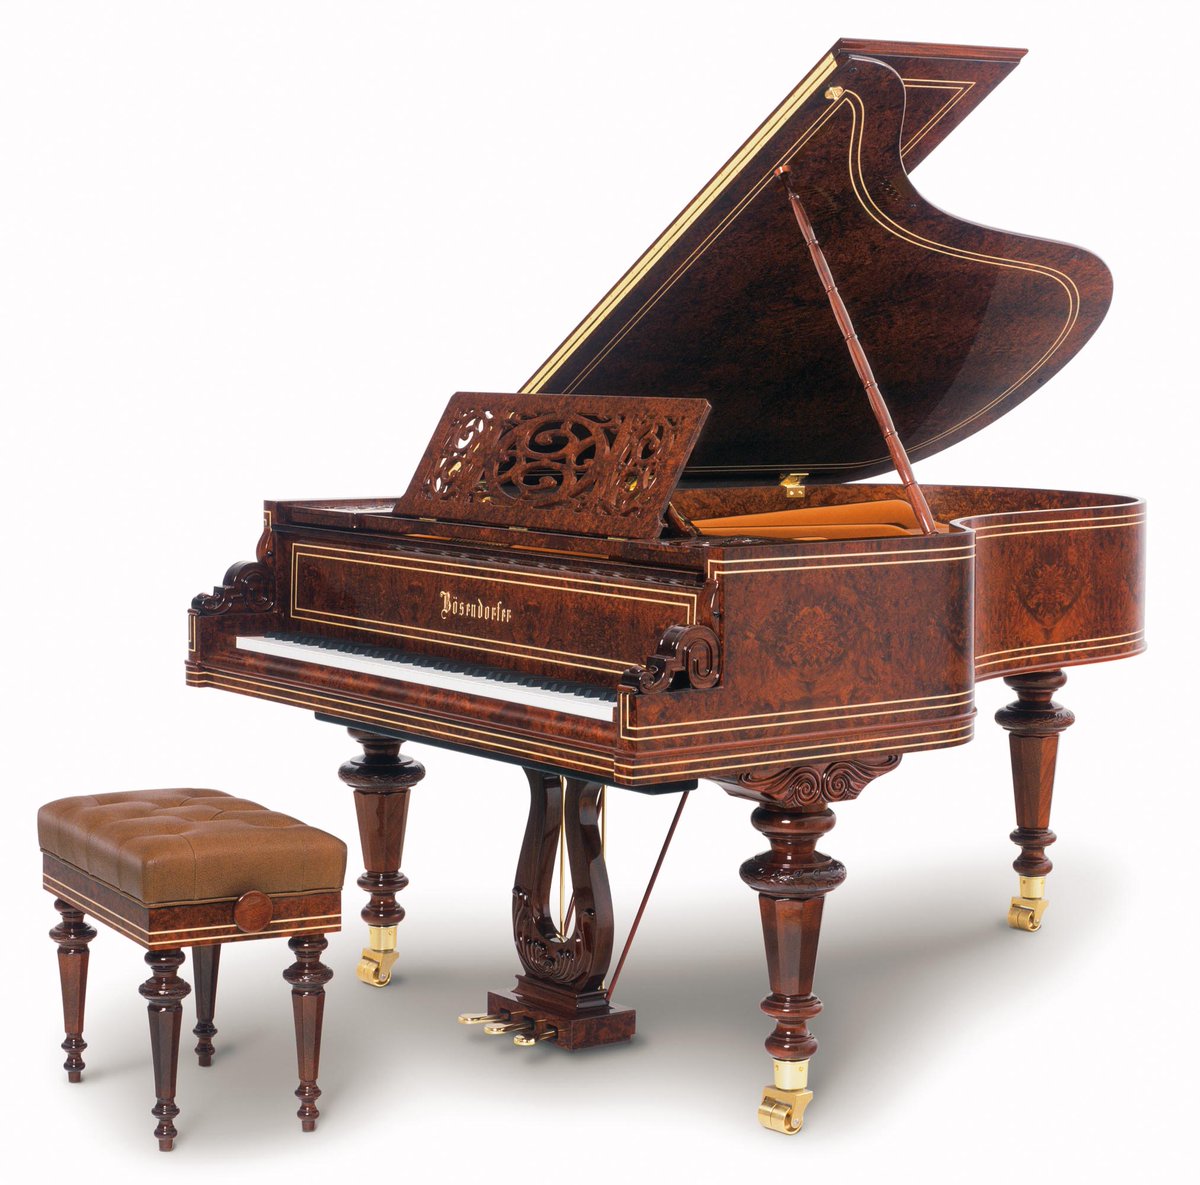 ¡Qué belleza! Piano de cola Bösendorfer $175.000 Euros.  🎹